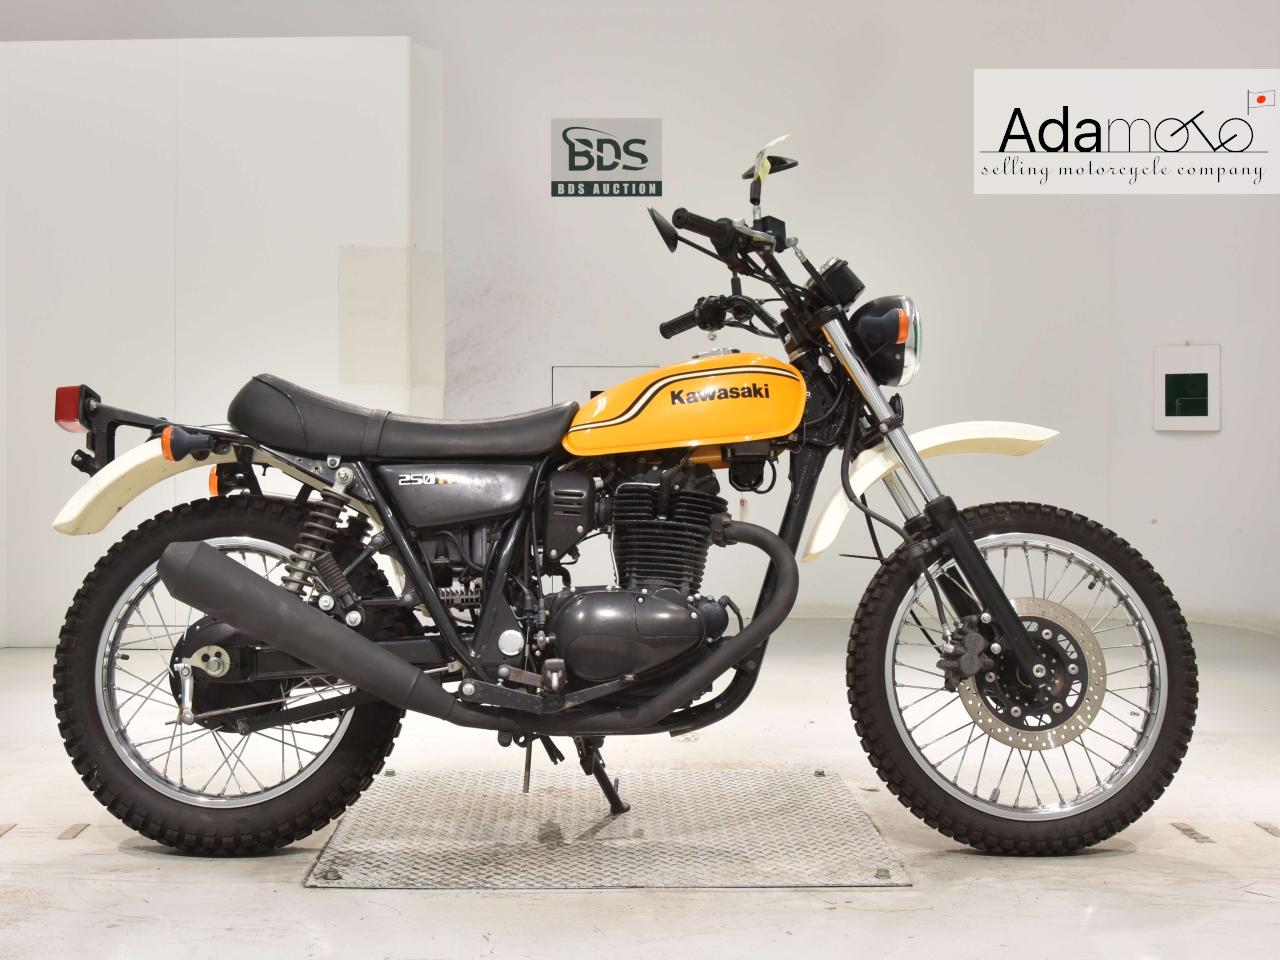 Kawasaki 250TR - Adamoto - Motorcycles from Japan